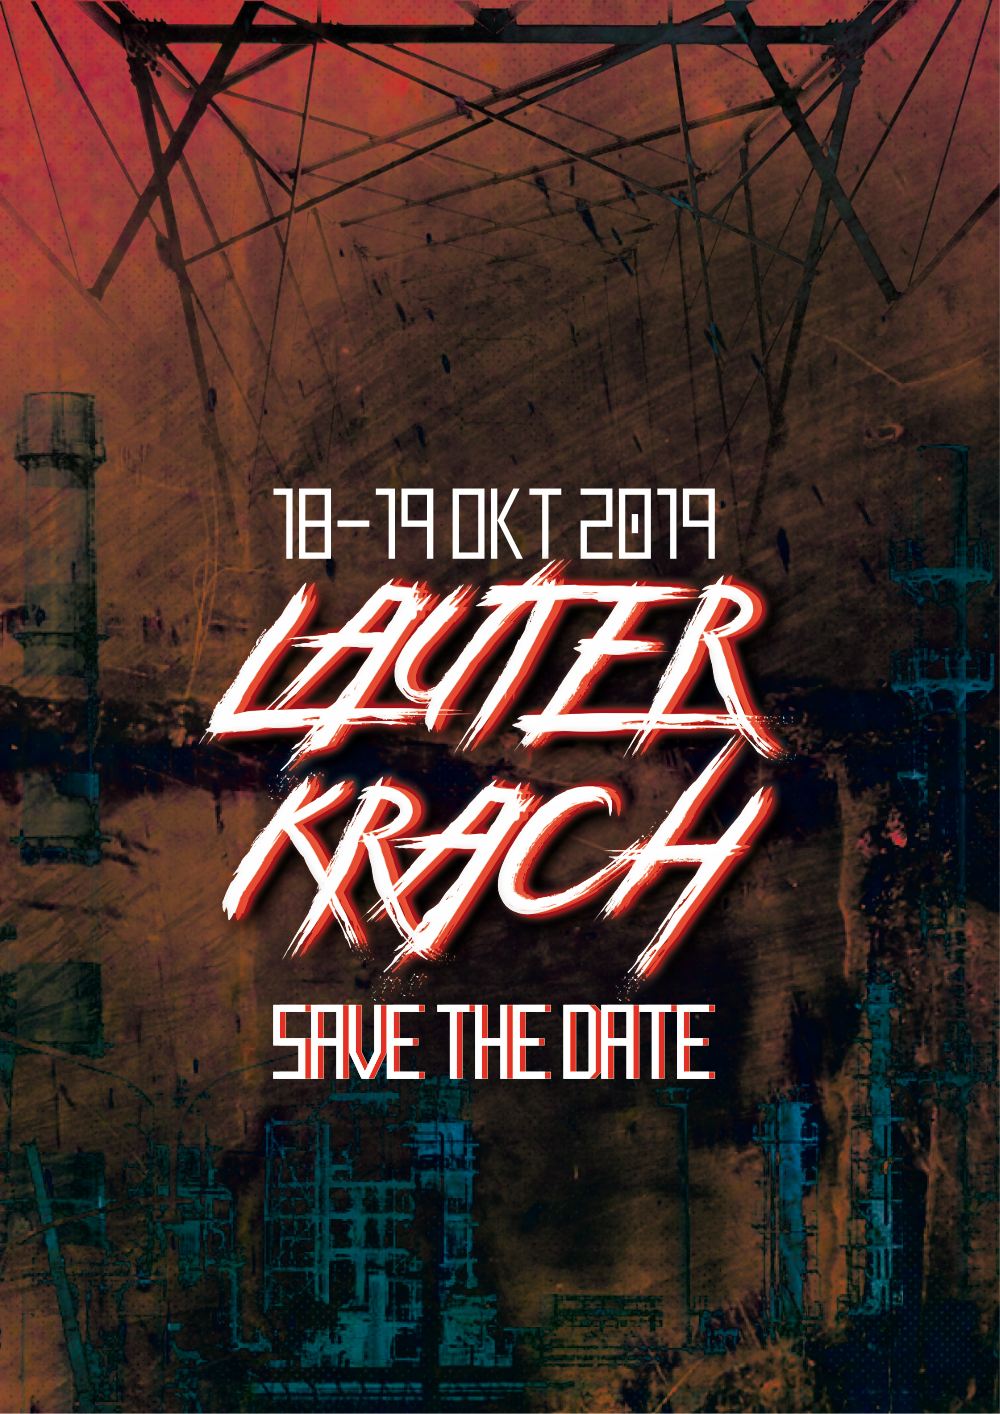 Lauter Krach 2019